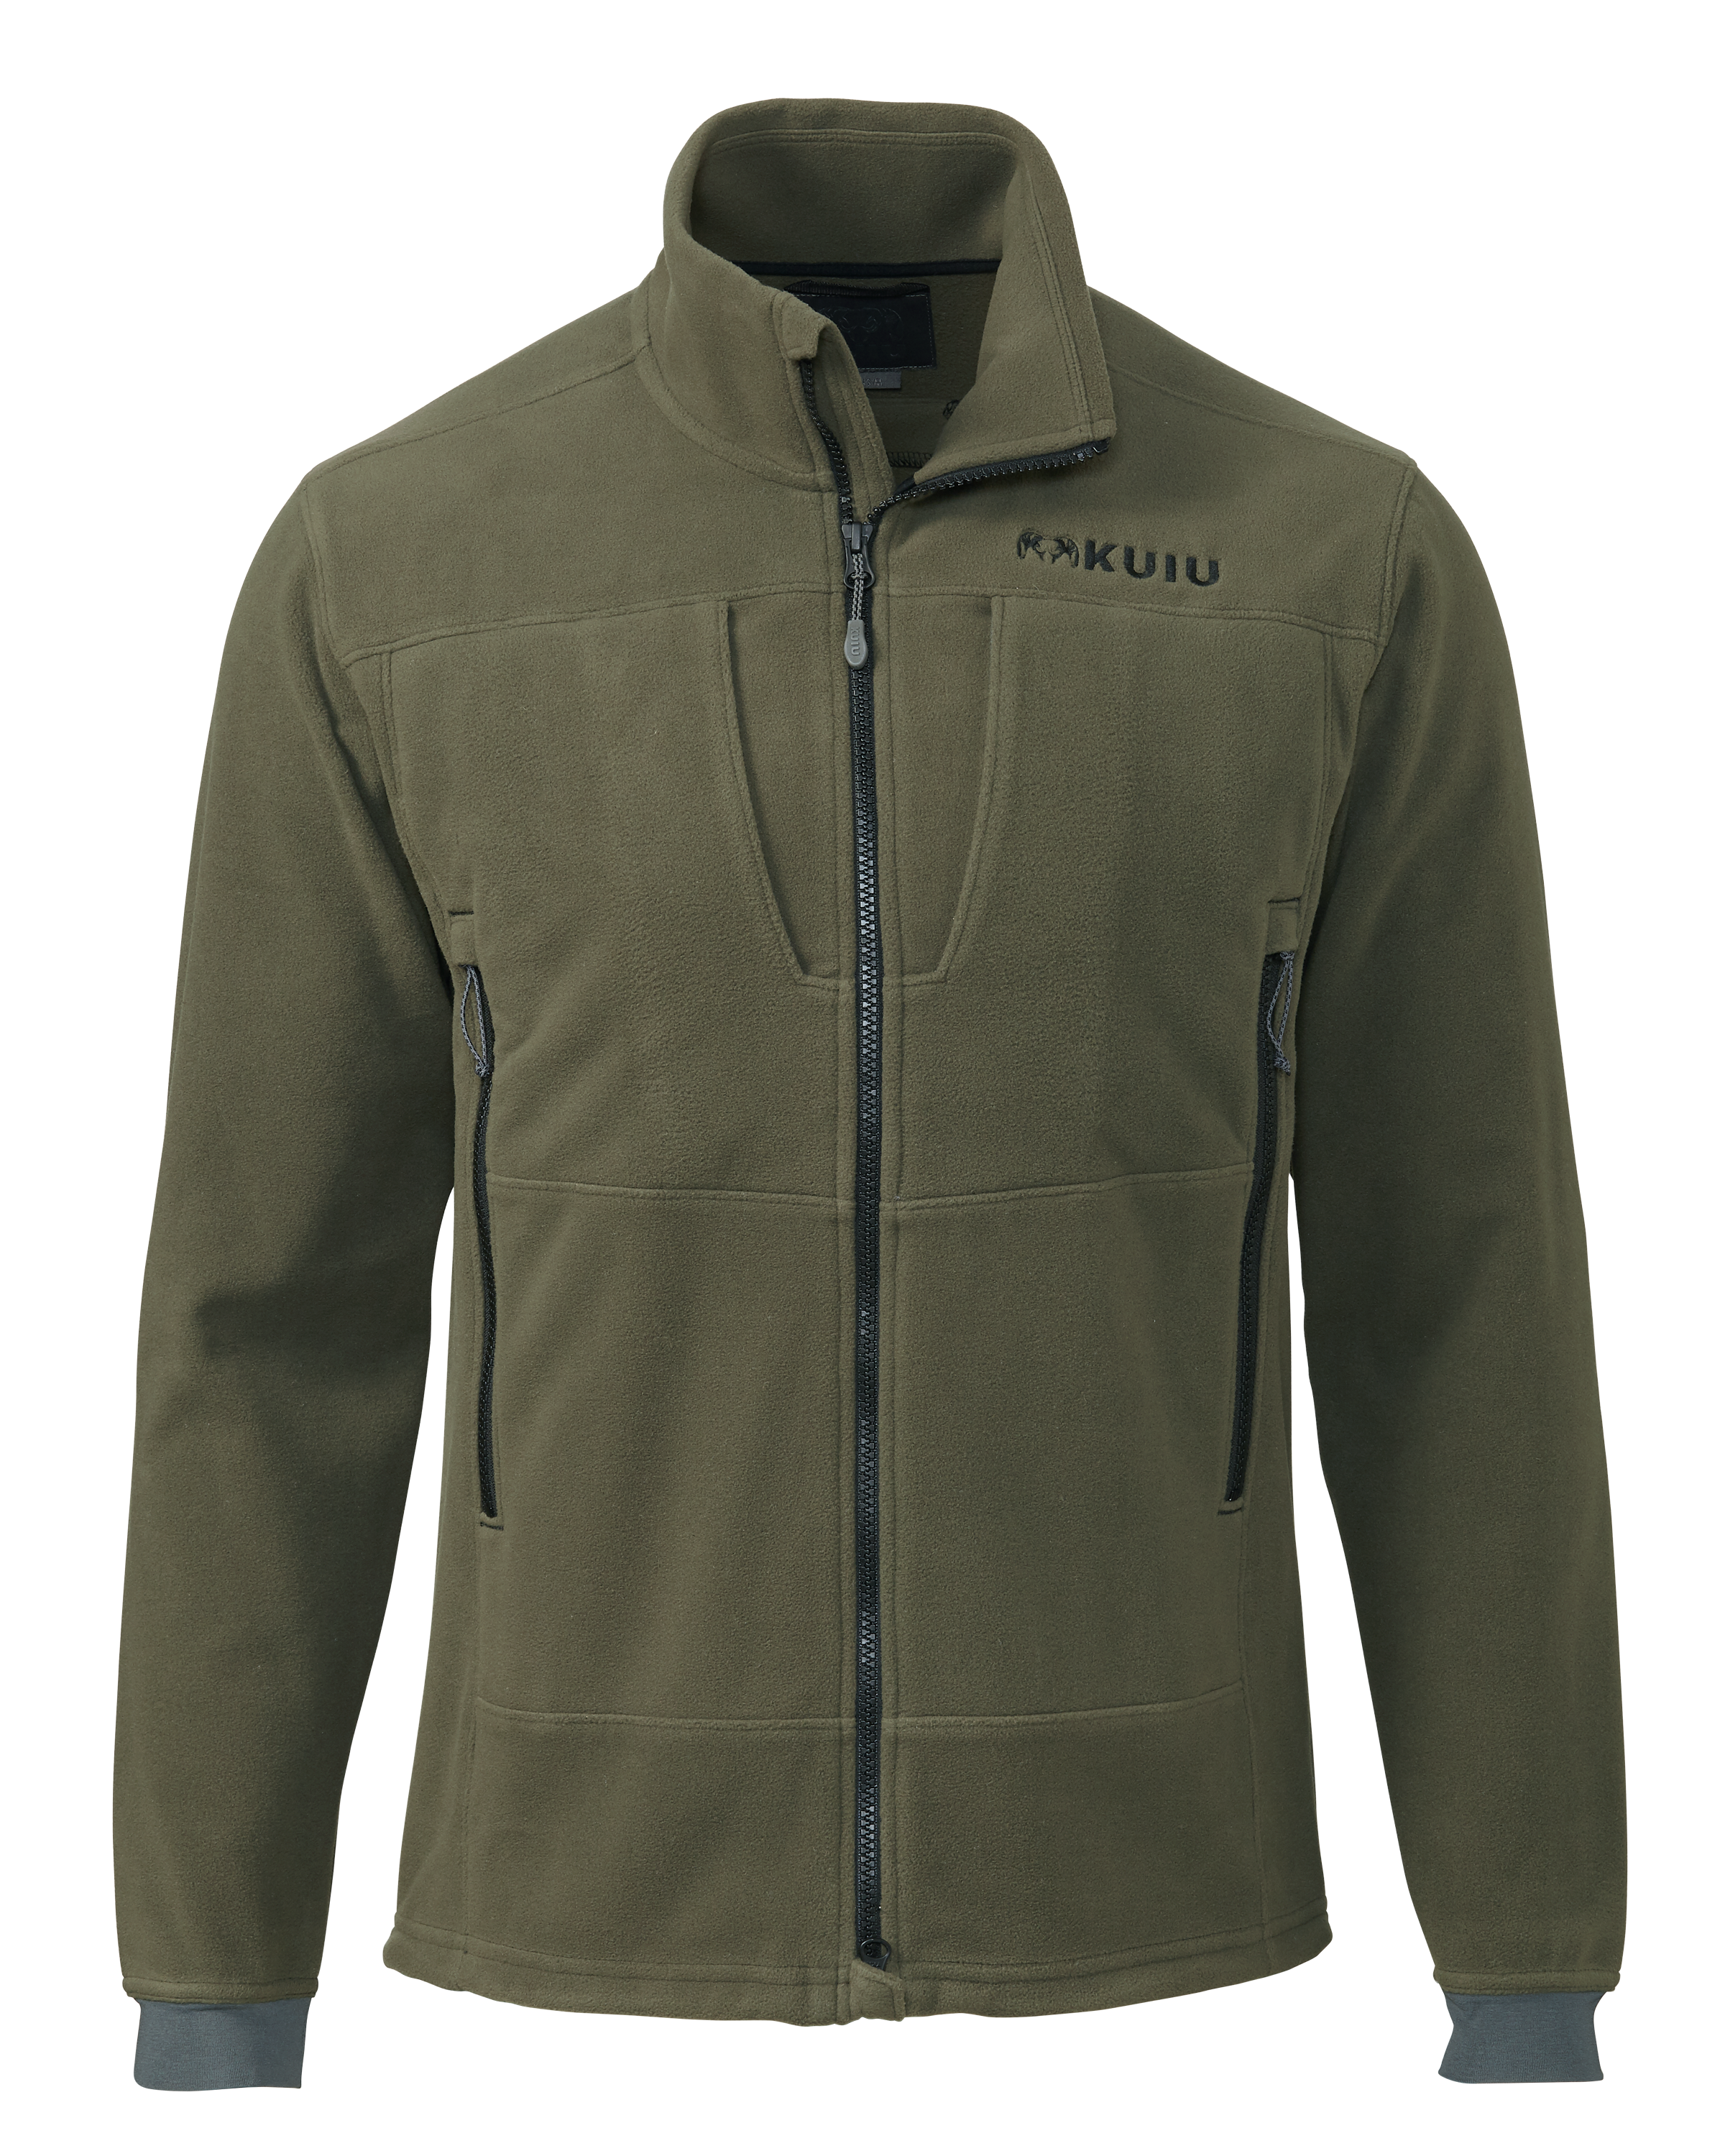 KUIU Wind Pro Fleece Full Zip Hunting Jacket in Olive | Size XL